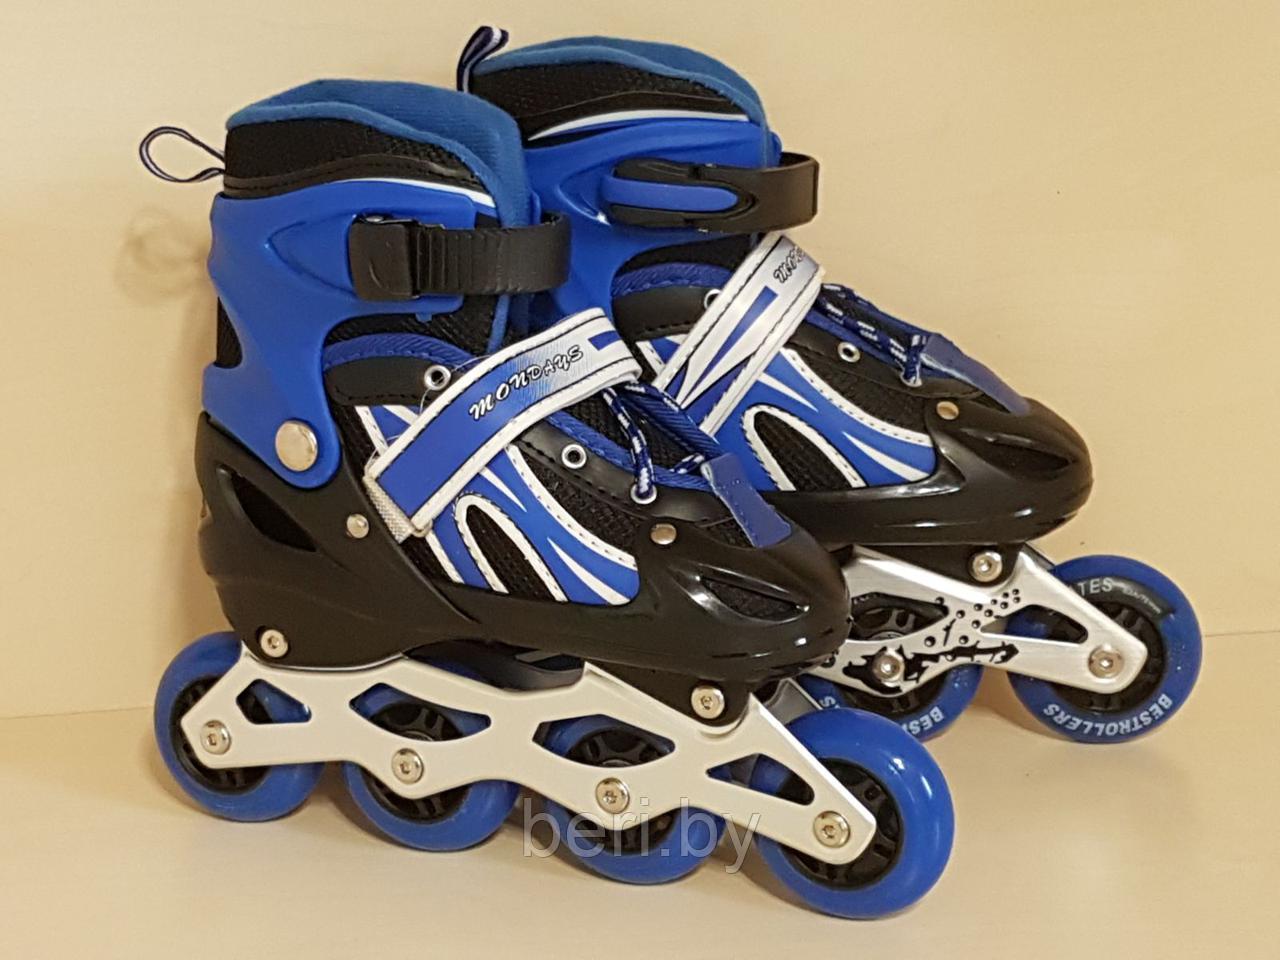 Ролики, роликовые коньки детские раздвижные S размер 29-33, полиуретановые колеса, синие , фото 1